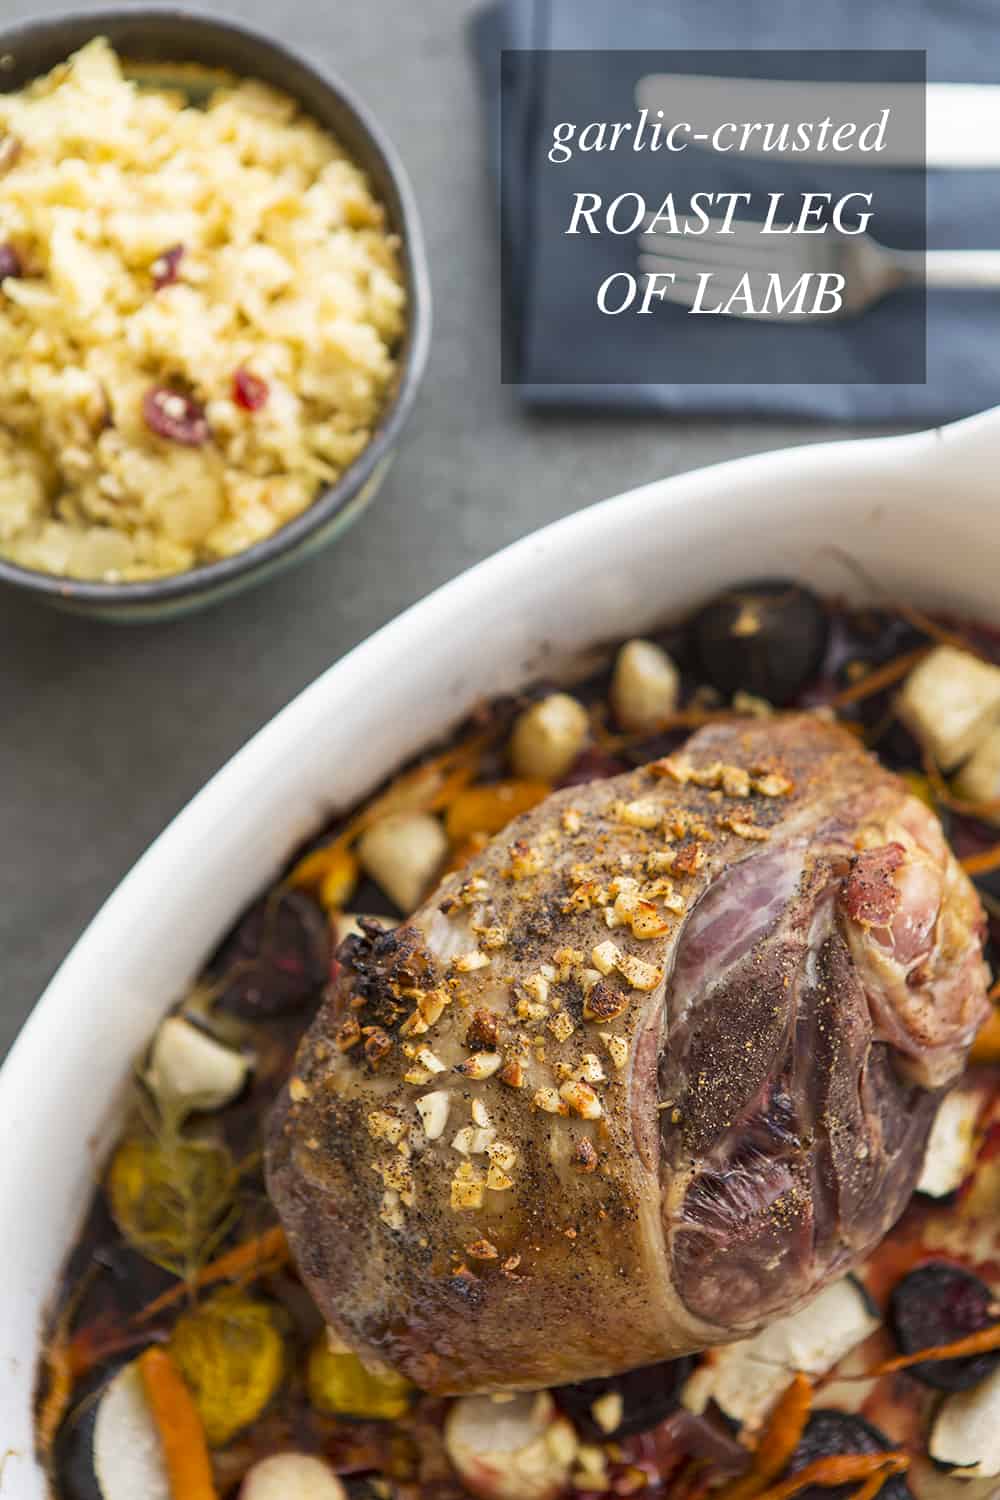 Garlic-crusted Roast Leg of Lamb